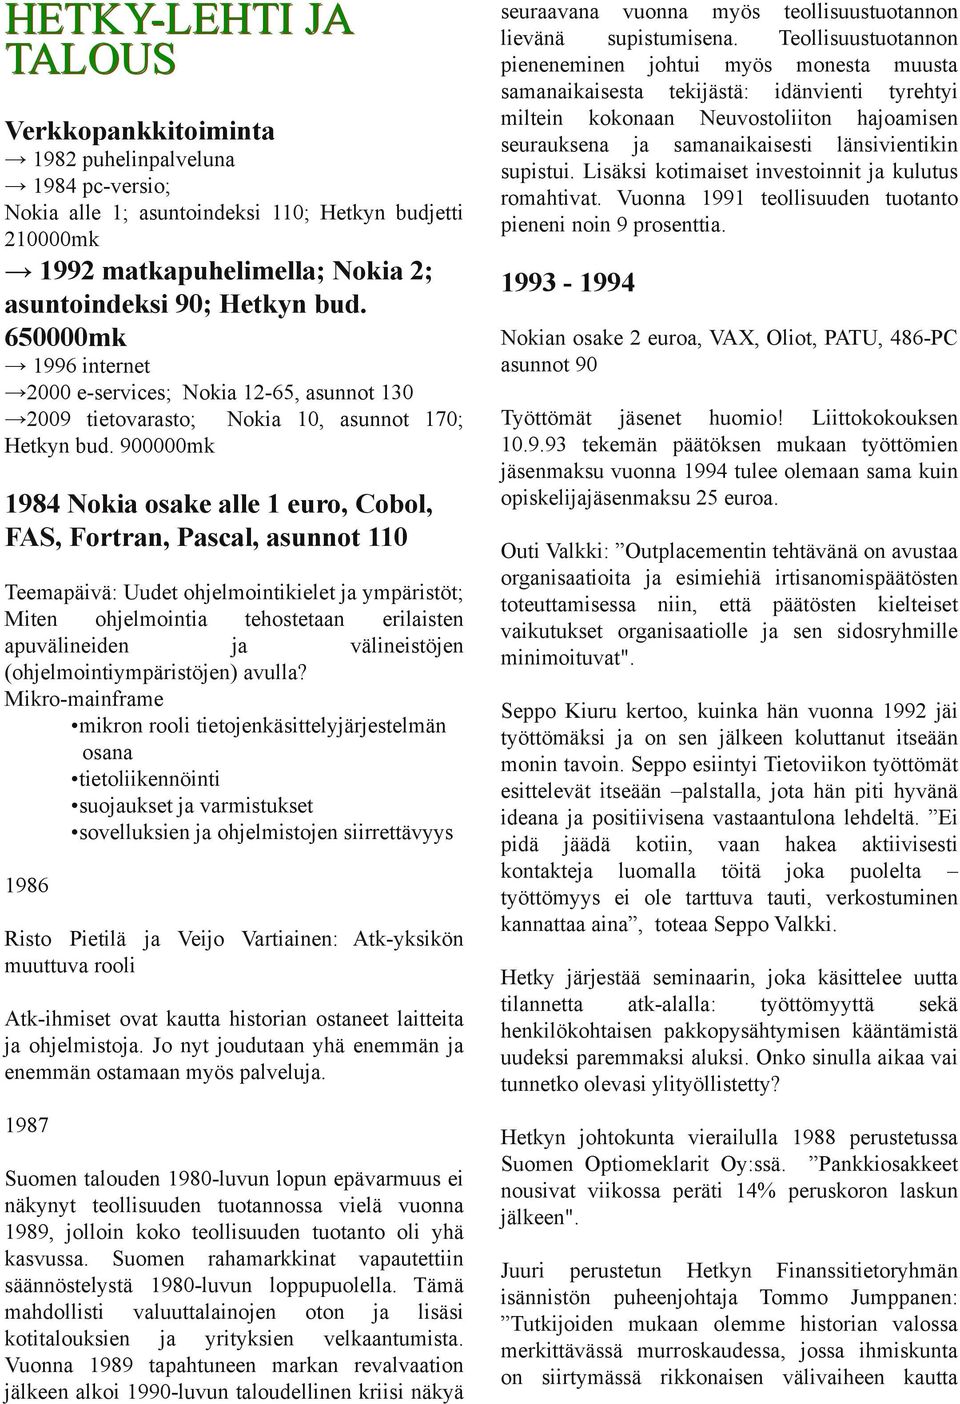 900000mk 1984 Nokia osake alle 1 euro, Cobol, FAS, Fortran, Pascal, asunnot 110 Teemapäivä: Uudet ohjelmointikielet ympäristöt Miten ohjelmointia tehostetaan erilaisten apuvälineiden välineistöjen